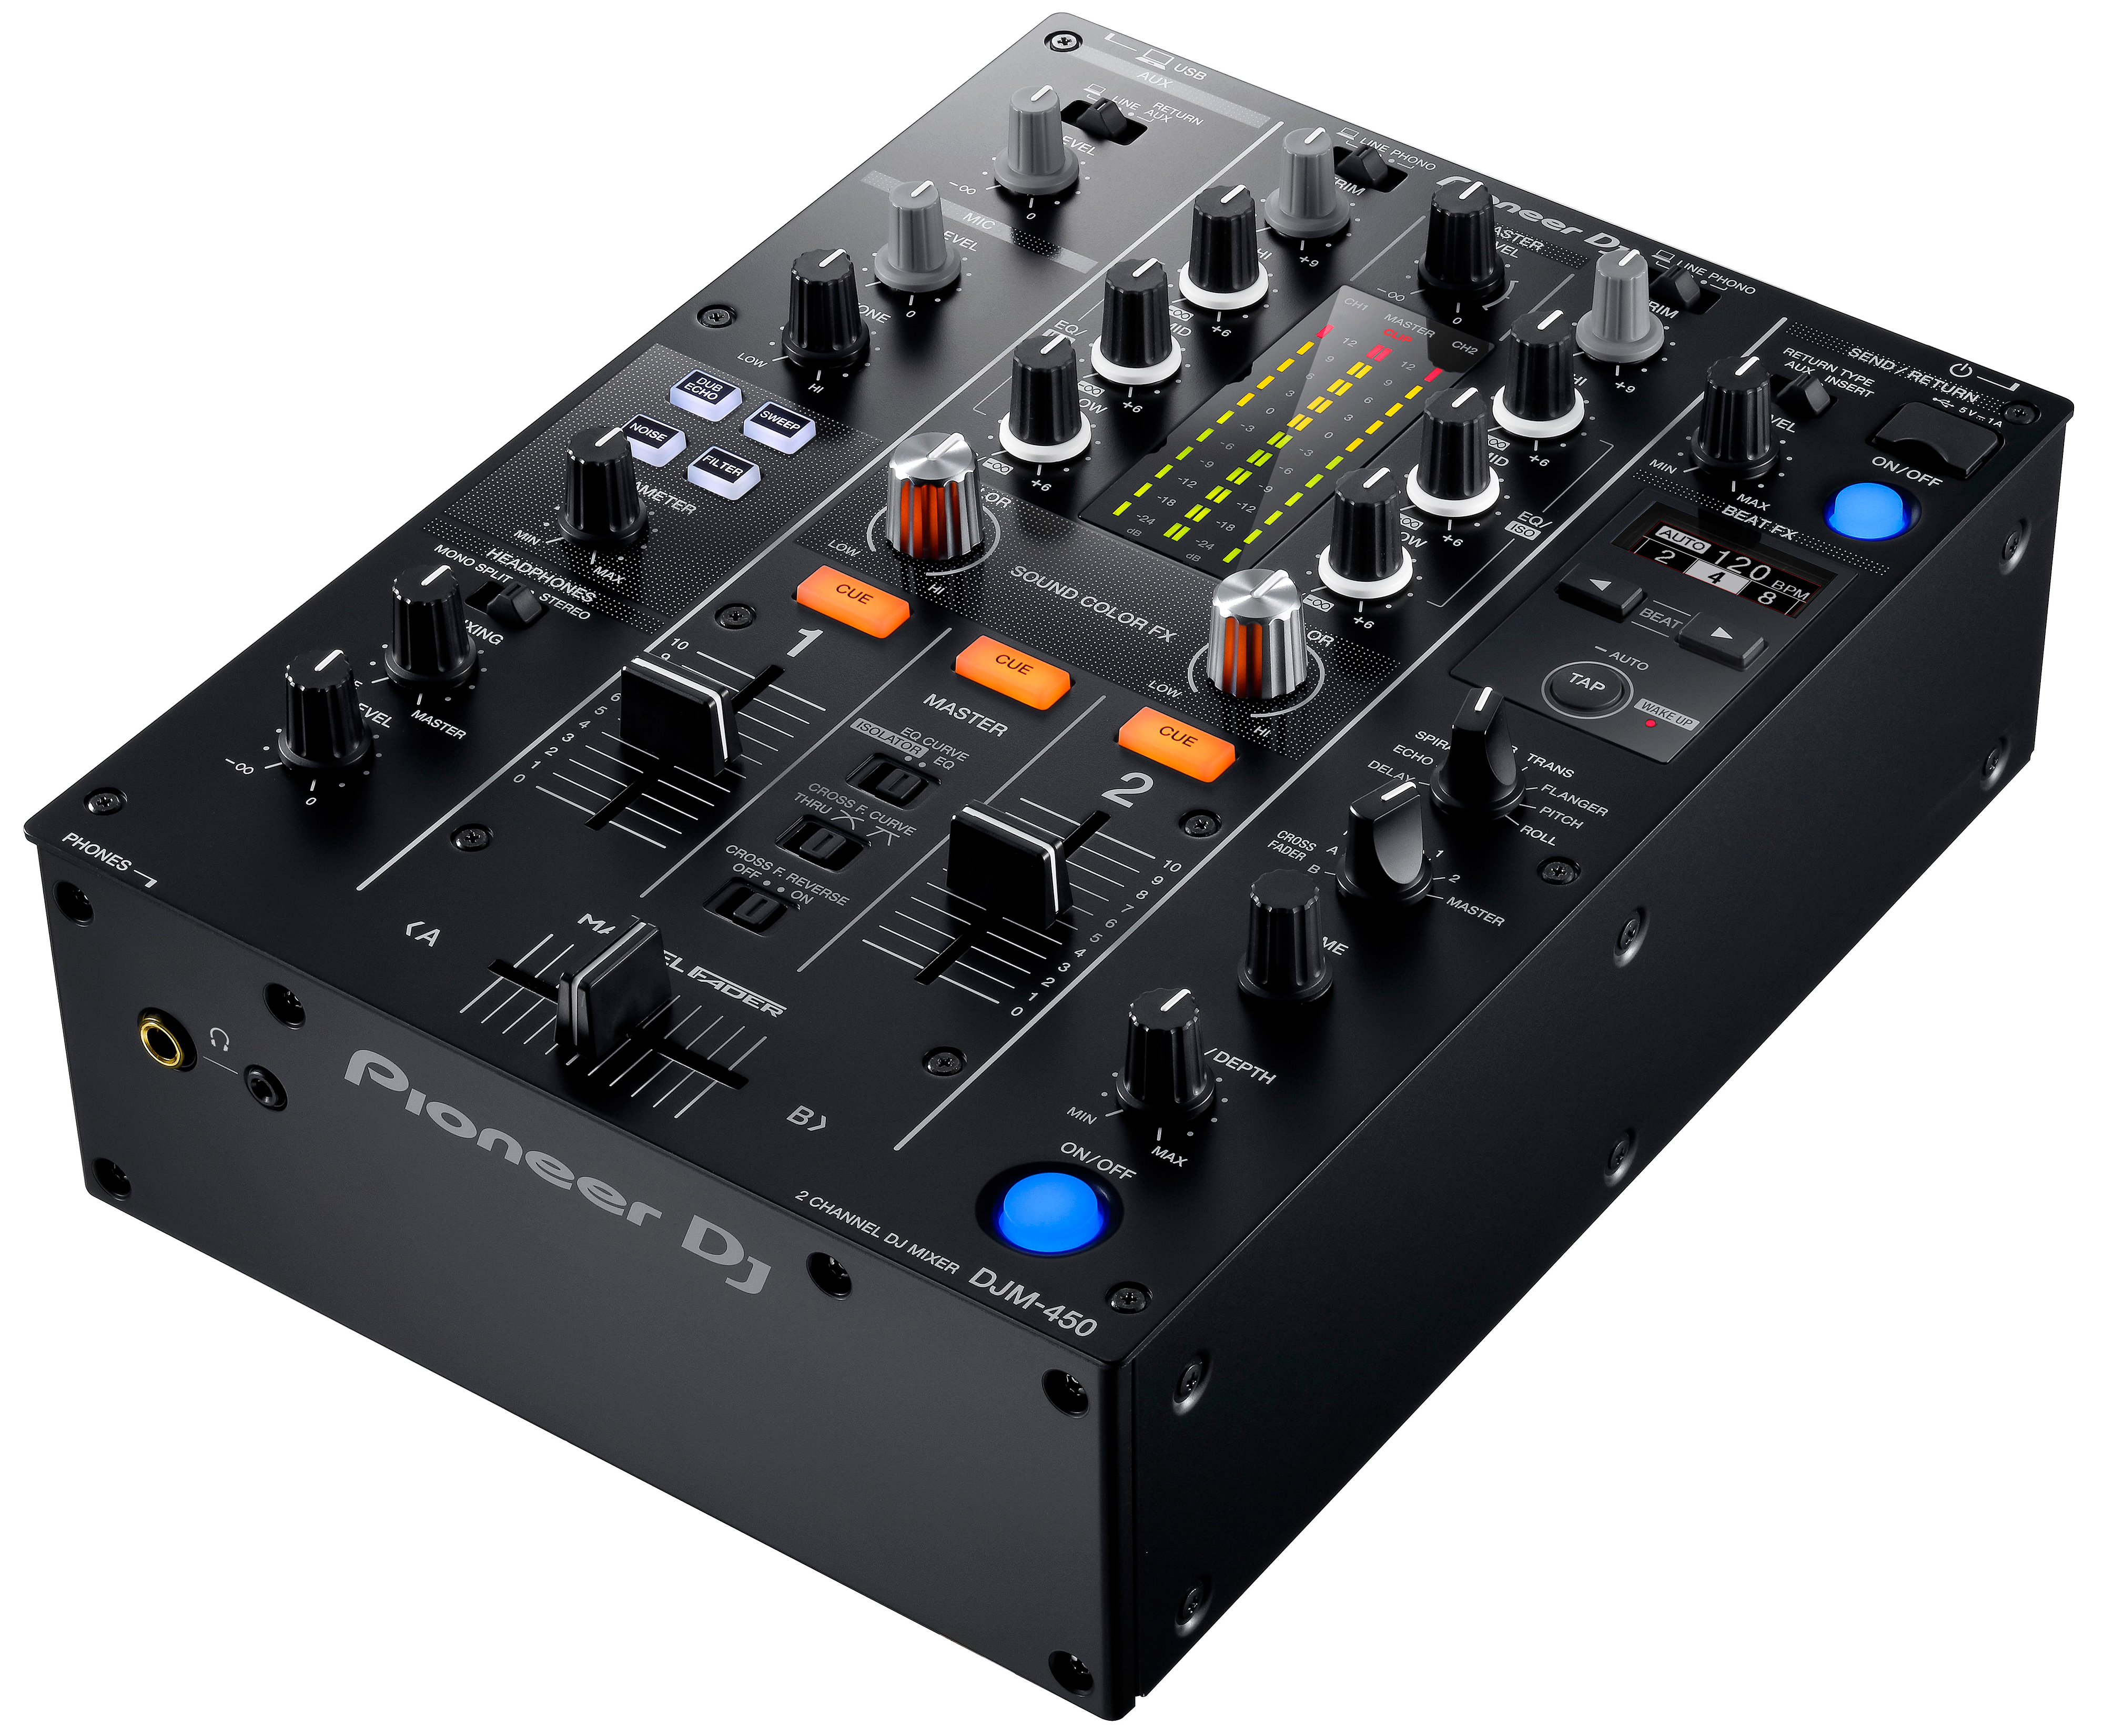 Nuevo mixer Pioneer DJM-450